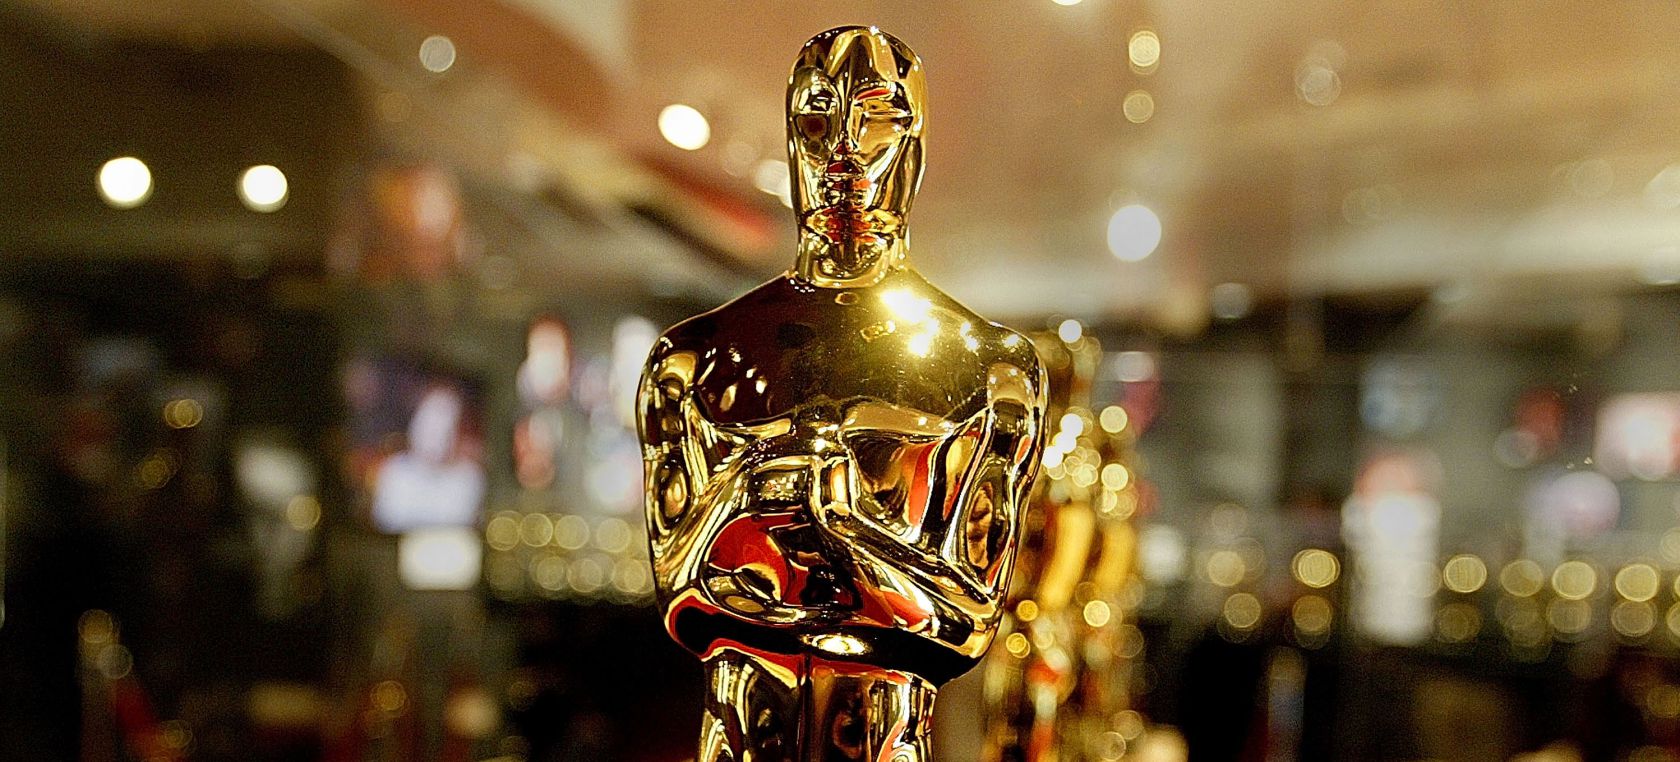 ! Fueron anunciados los nominados para la próxima entrega de los premios Oscar ¡ – @TheAcademy